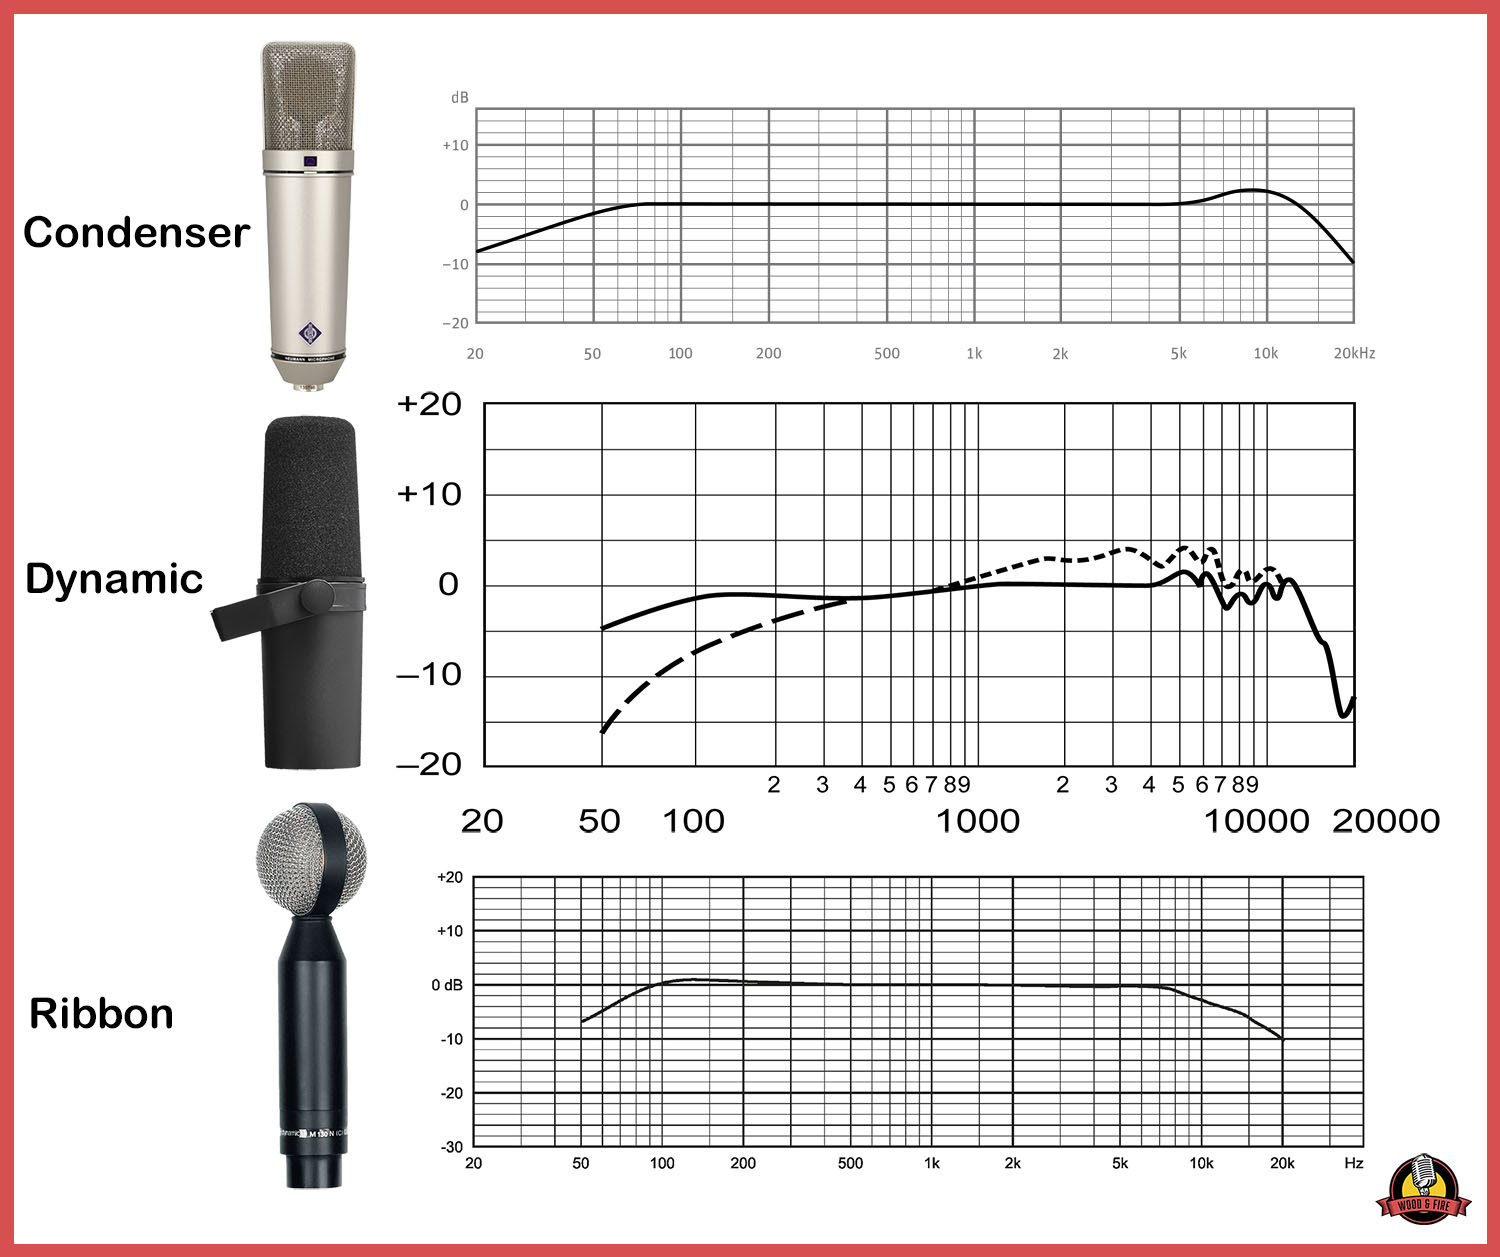 Comparaison des courbes de fréquence de chaque type de microphone avec les modèles les plus populaires de chaque classe